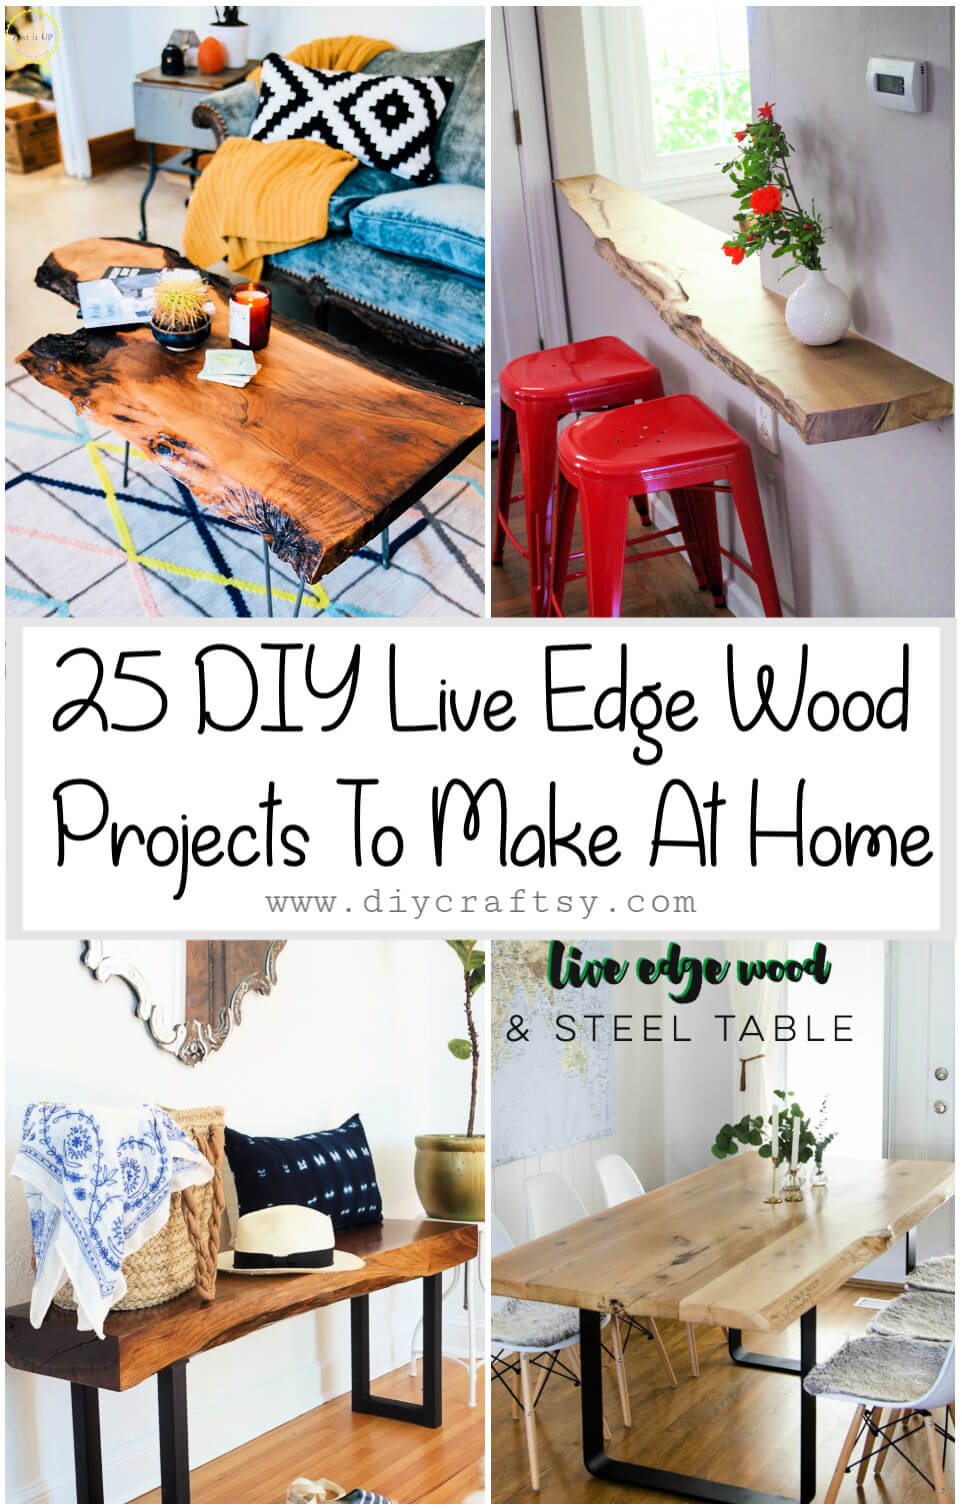 25 proyectos de bricolaje de madera con bordes vivos para hacer en casa